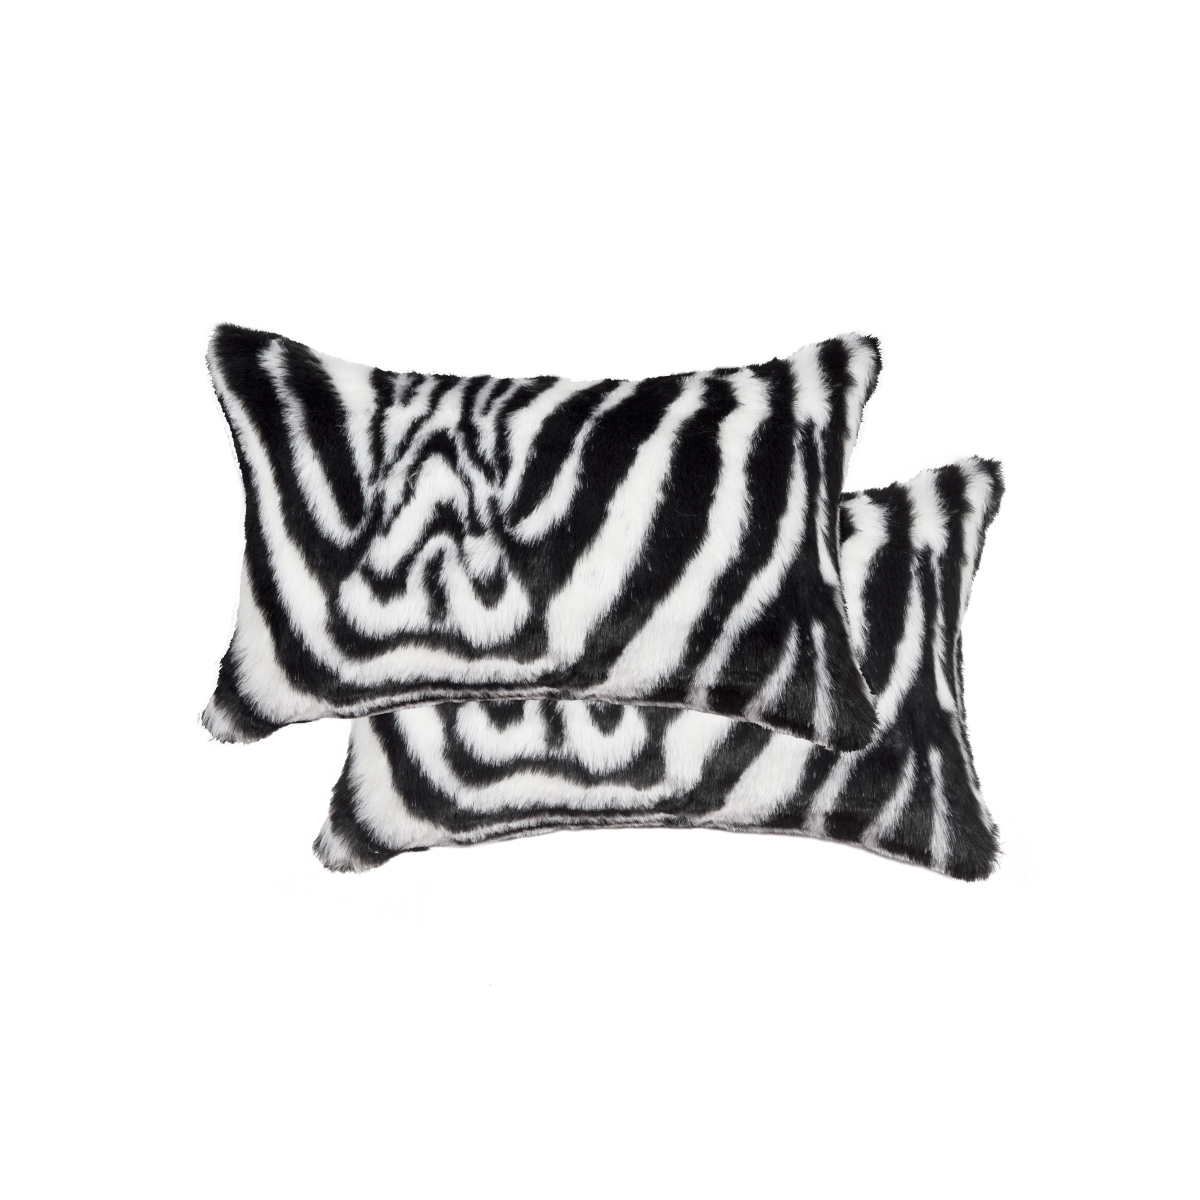 676685041258 12 X 20 In. Belton Sheepskin Pillow - Denton Zebra Black & White - Pack Of 2